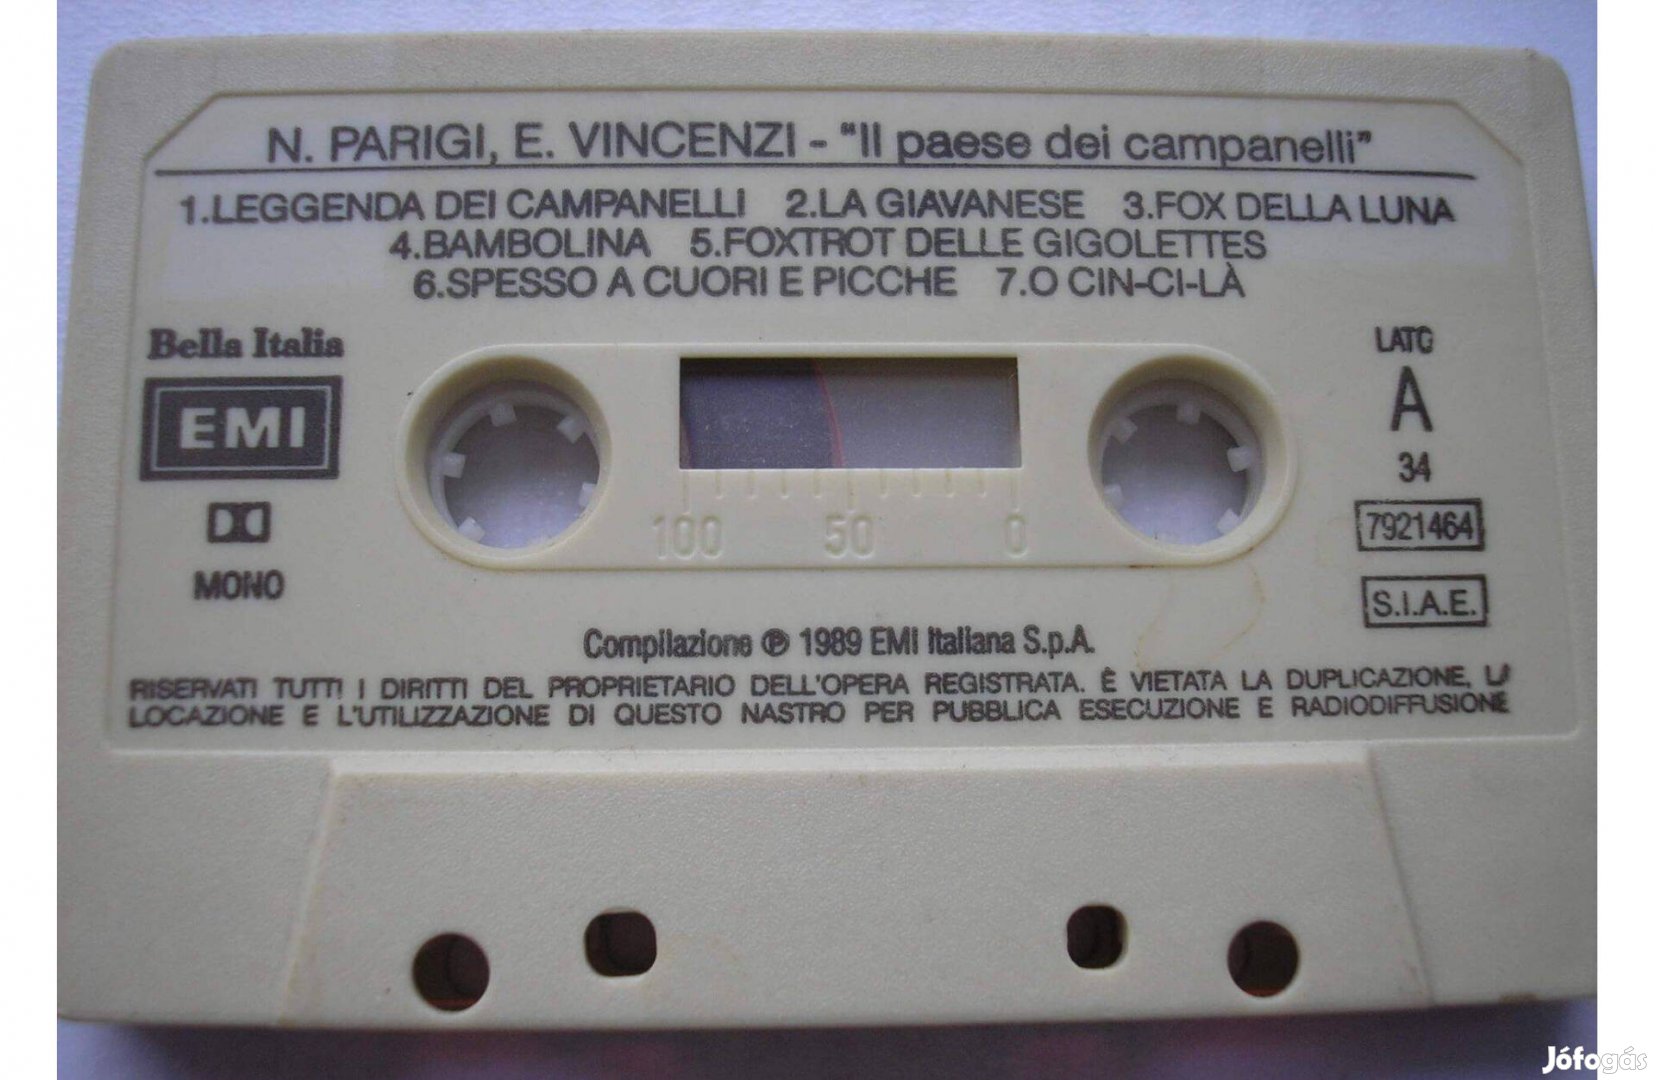 N.Parigi - Bella Italia , 1989 EMI Italiana , gyári műsoros kazetta